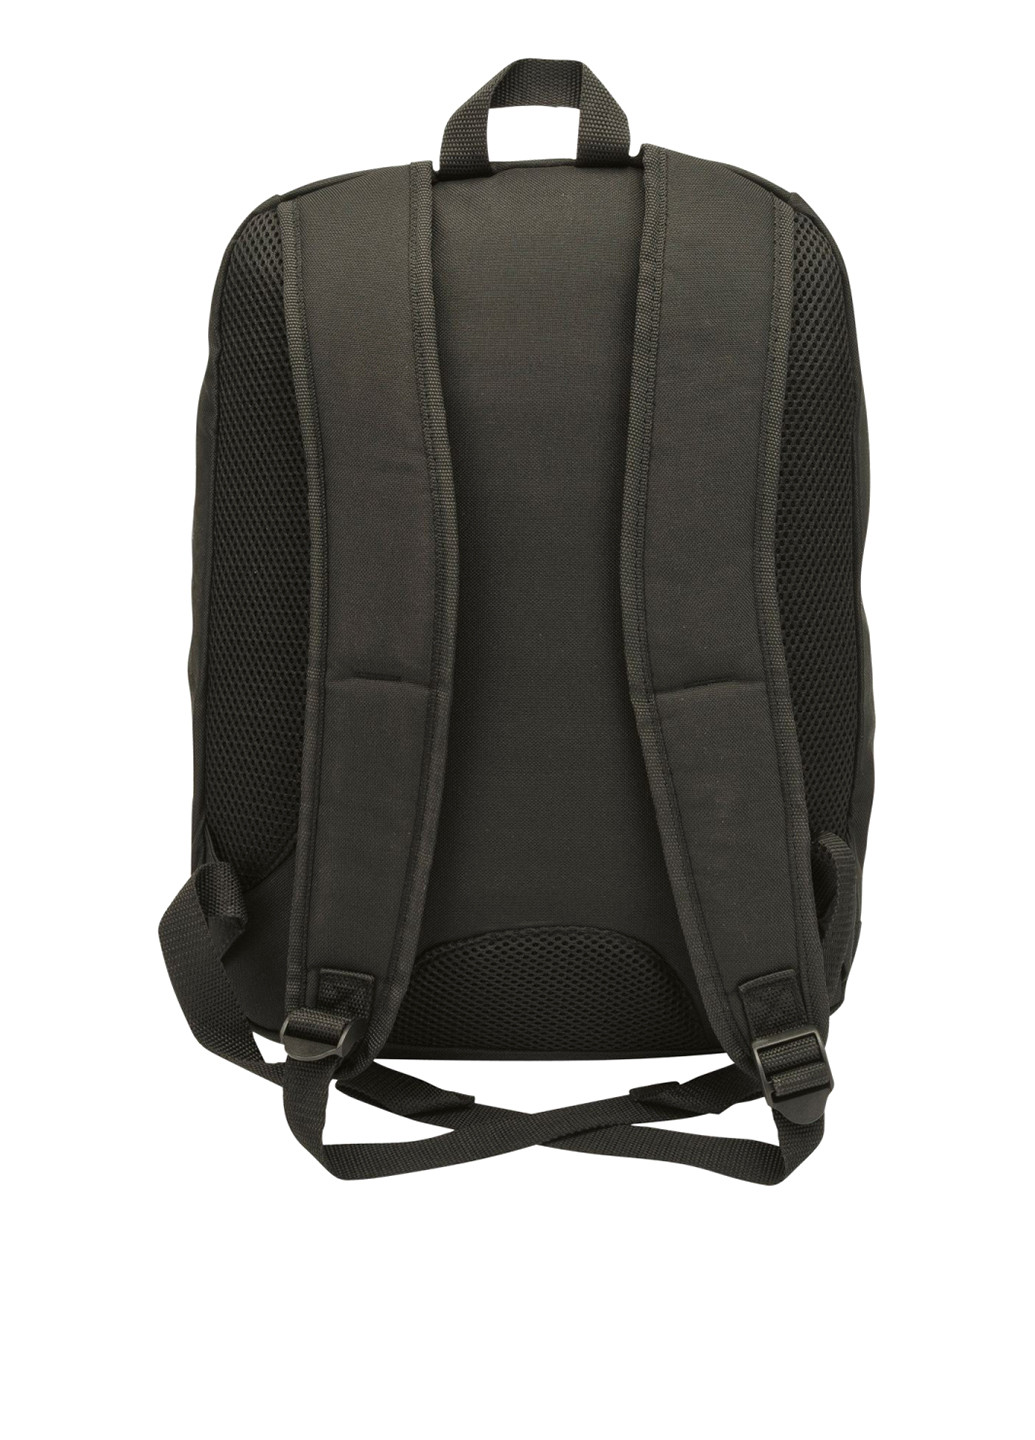 Рюкзак для ноутбука Essential Backpack HP h1d24aa (133591058)